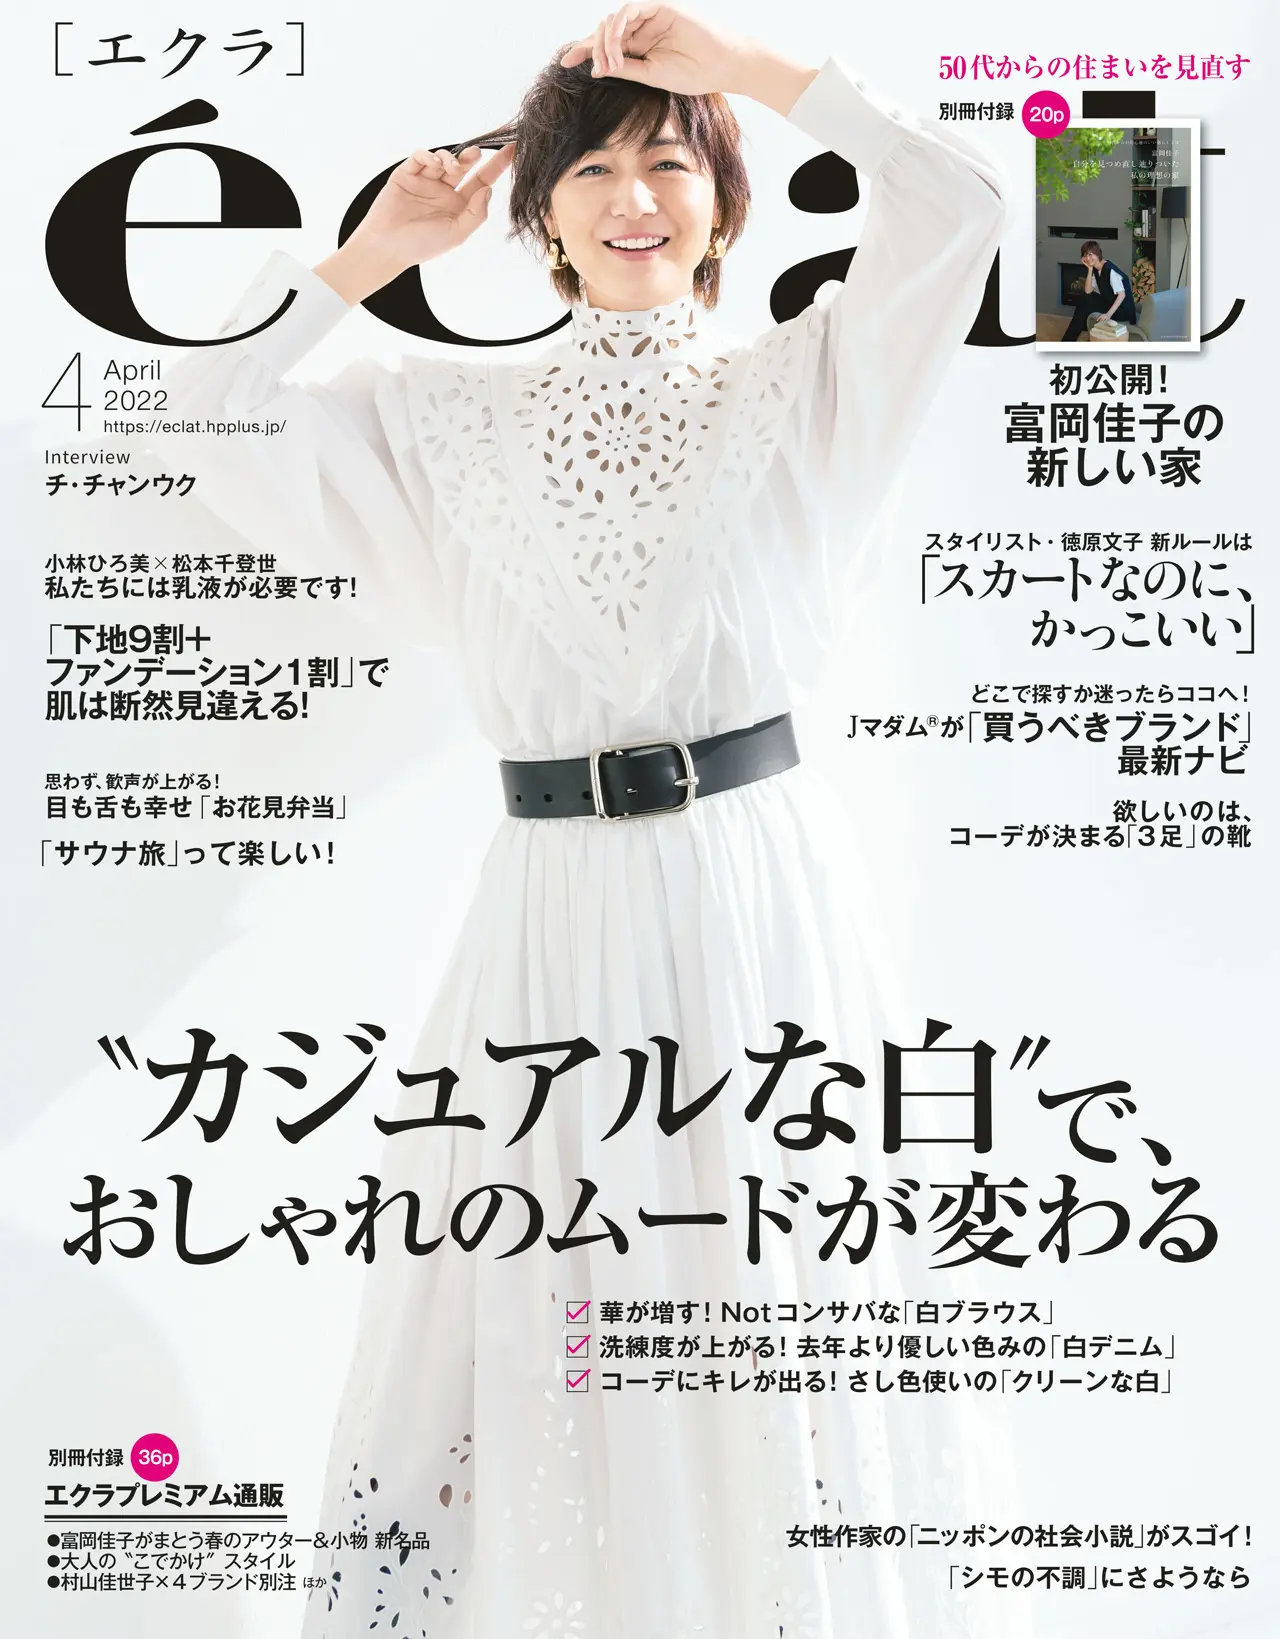 エクラ4月号表紙。カバーモデルは富岡佳子さん。